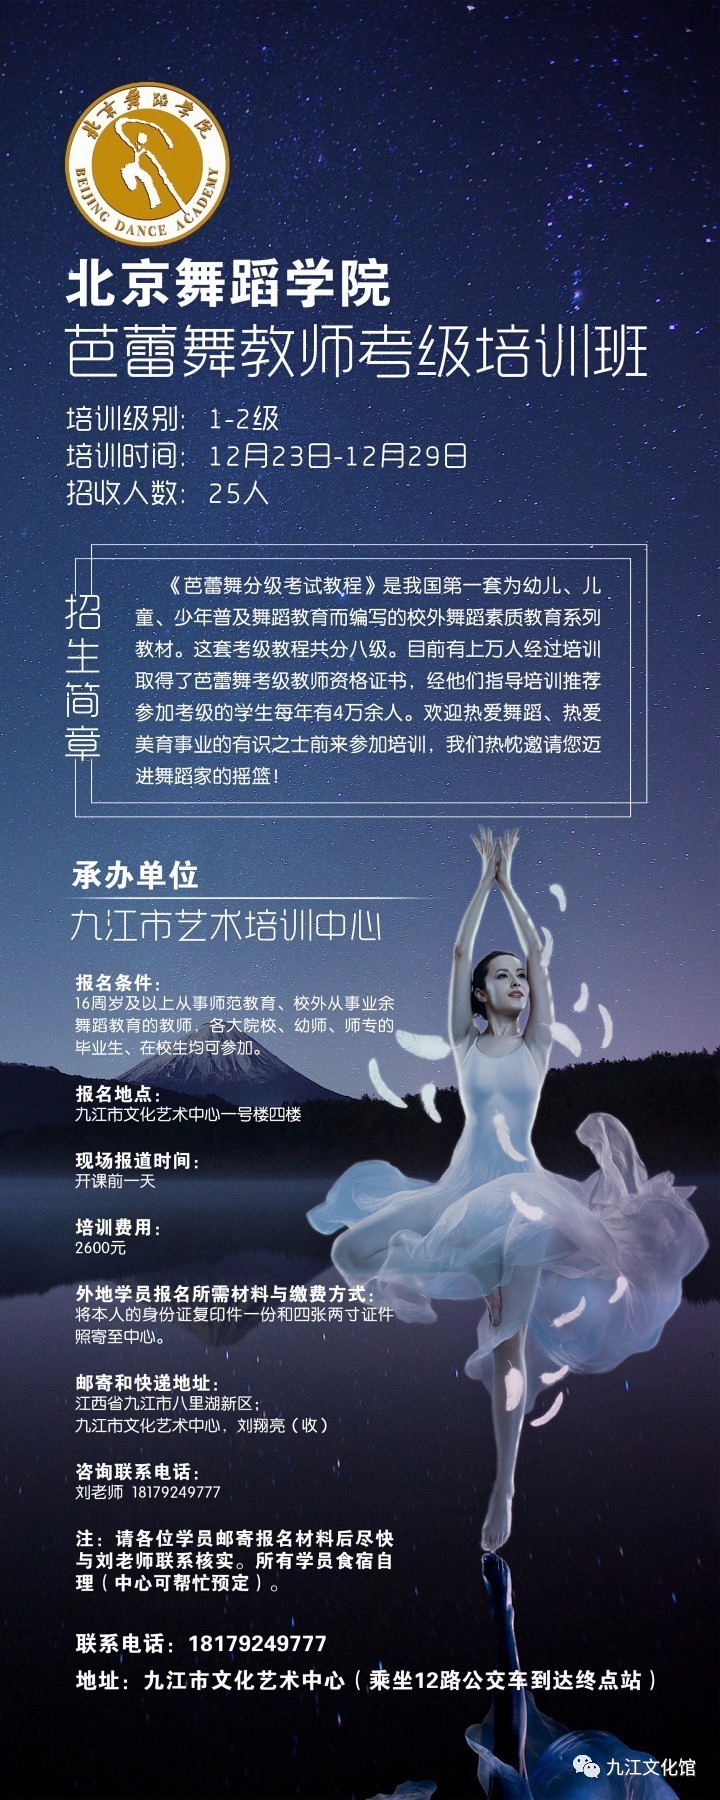 北京舞蹈学院芭蕾舞教师考级培训班开始招生啦